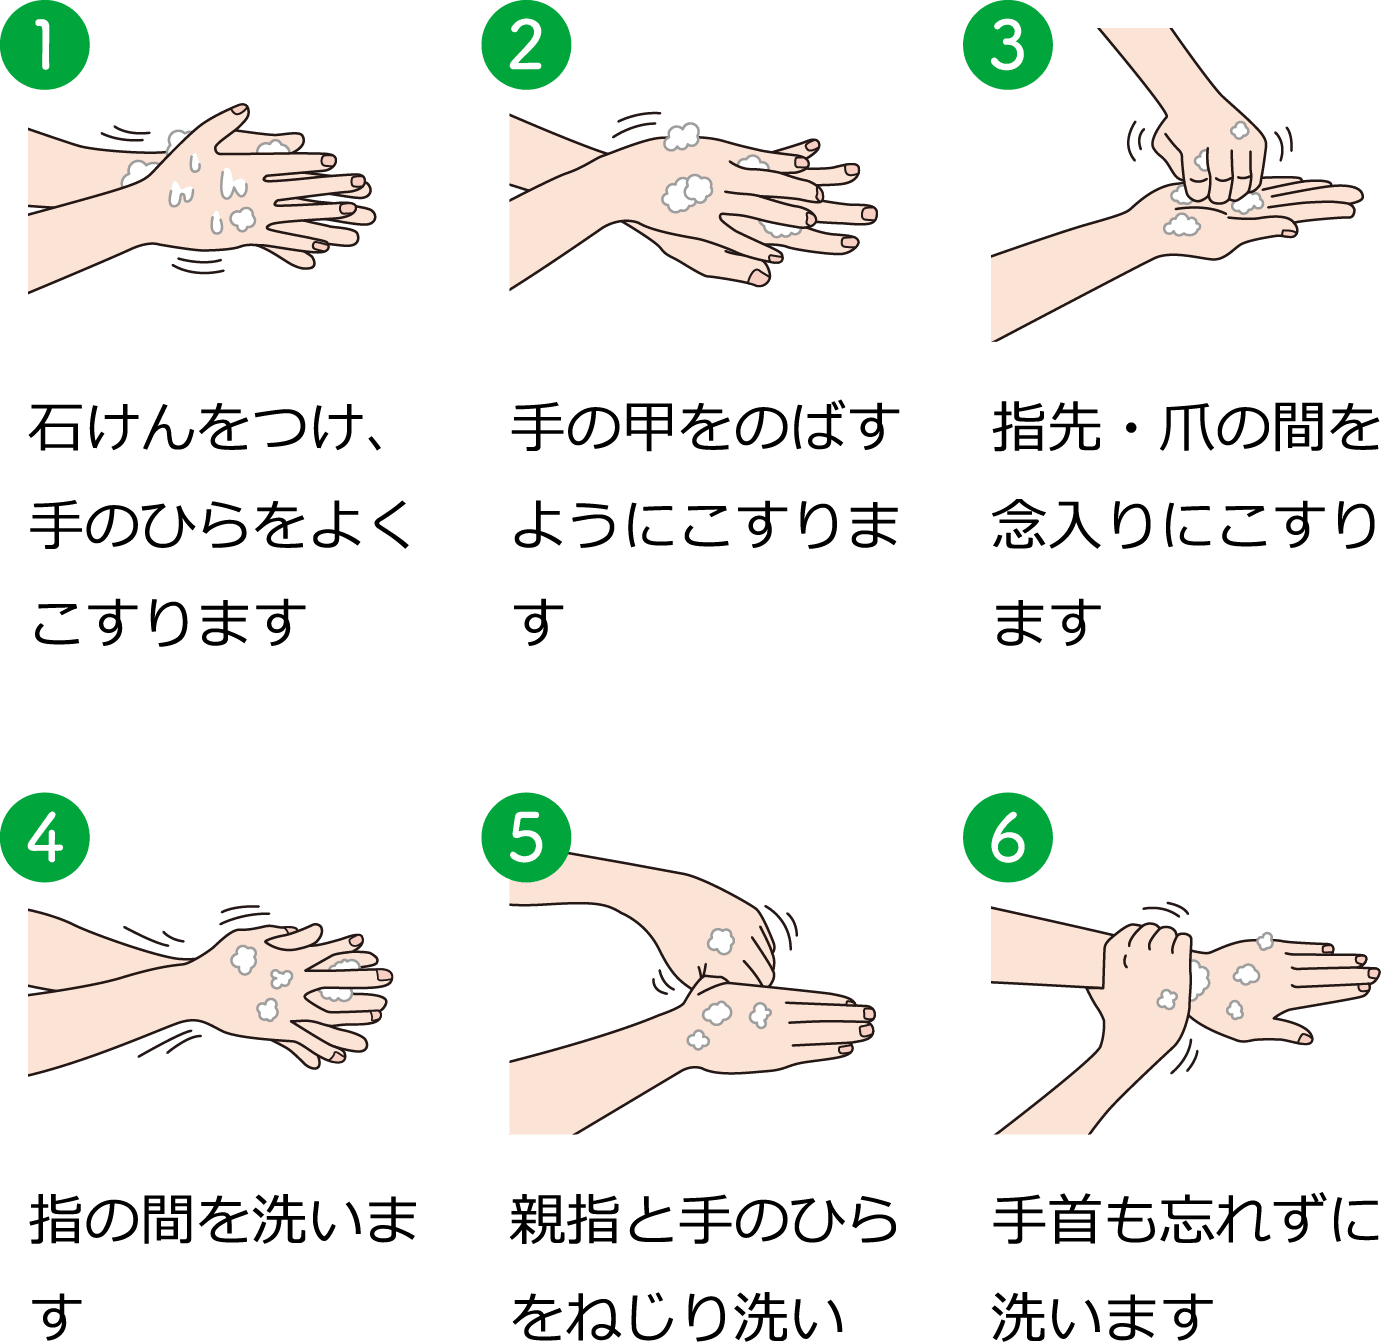 1.石けんをつけ、手のひらをよくこすります 2.手の甲を伸ばすようにこすります 3.指先・爪の間を念入りにこすります 4.指の間を洗います 5.親指と手のひらをねじり洗い 6.手首も忘れずに洗います